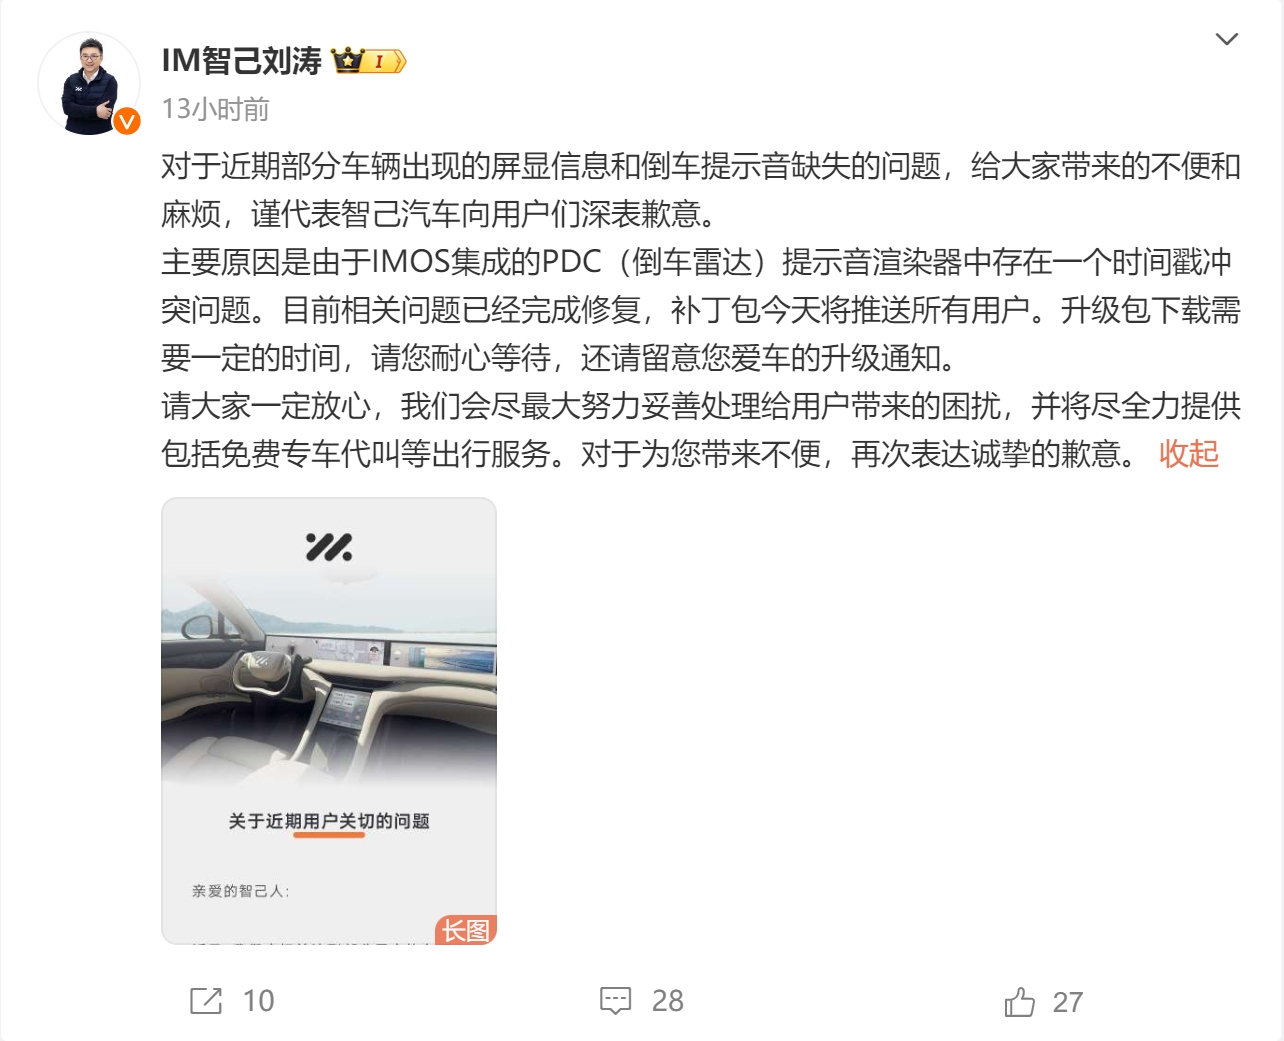 智己汽车联席CEO刘涛：屏显信息和倒车提示音缺失问题已经完成修复，向用户们深表歉意